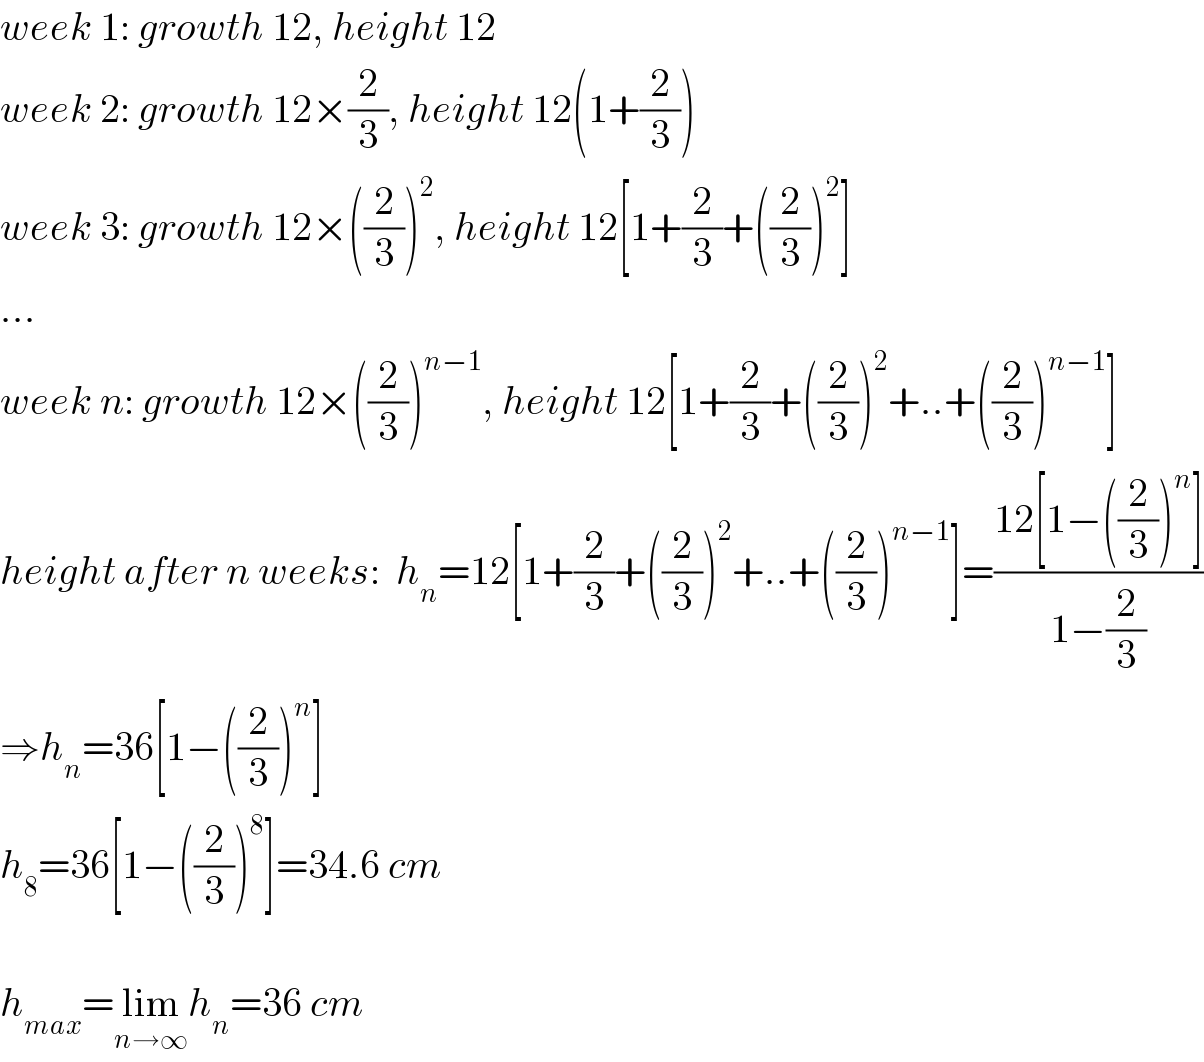 week 1: growth 12, height 12  week 2: growth 12×(2/3), height 12(1+(2/3))  week 3: growth 12×((2/3))^2 , height 12[1+(2/3)+((2/3))^2 ]  ...  week n: growth 12×((2/3))^(n−1) , height 12[1+(2/3)+((2/3))^2 +..+((2/3))^(n−1) ]  height after n weeks:  h_n =12[1+(2/3)+((2/3))^2 +..+((2/3))^(n−1) ]=((12[1−((2/3))^n ])/(1−(2/3)))  ⇒h_n =36[1−((2/3))^n ]  h_8 =36[1−((2/3))^8 ]=34.6 cm    h_(max) =lim_(n→∞) h_n =36 cm  